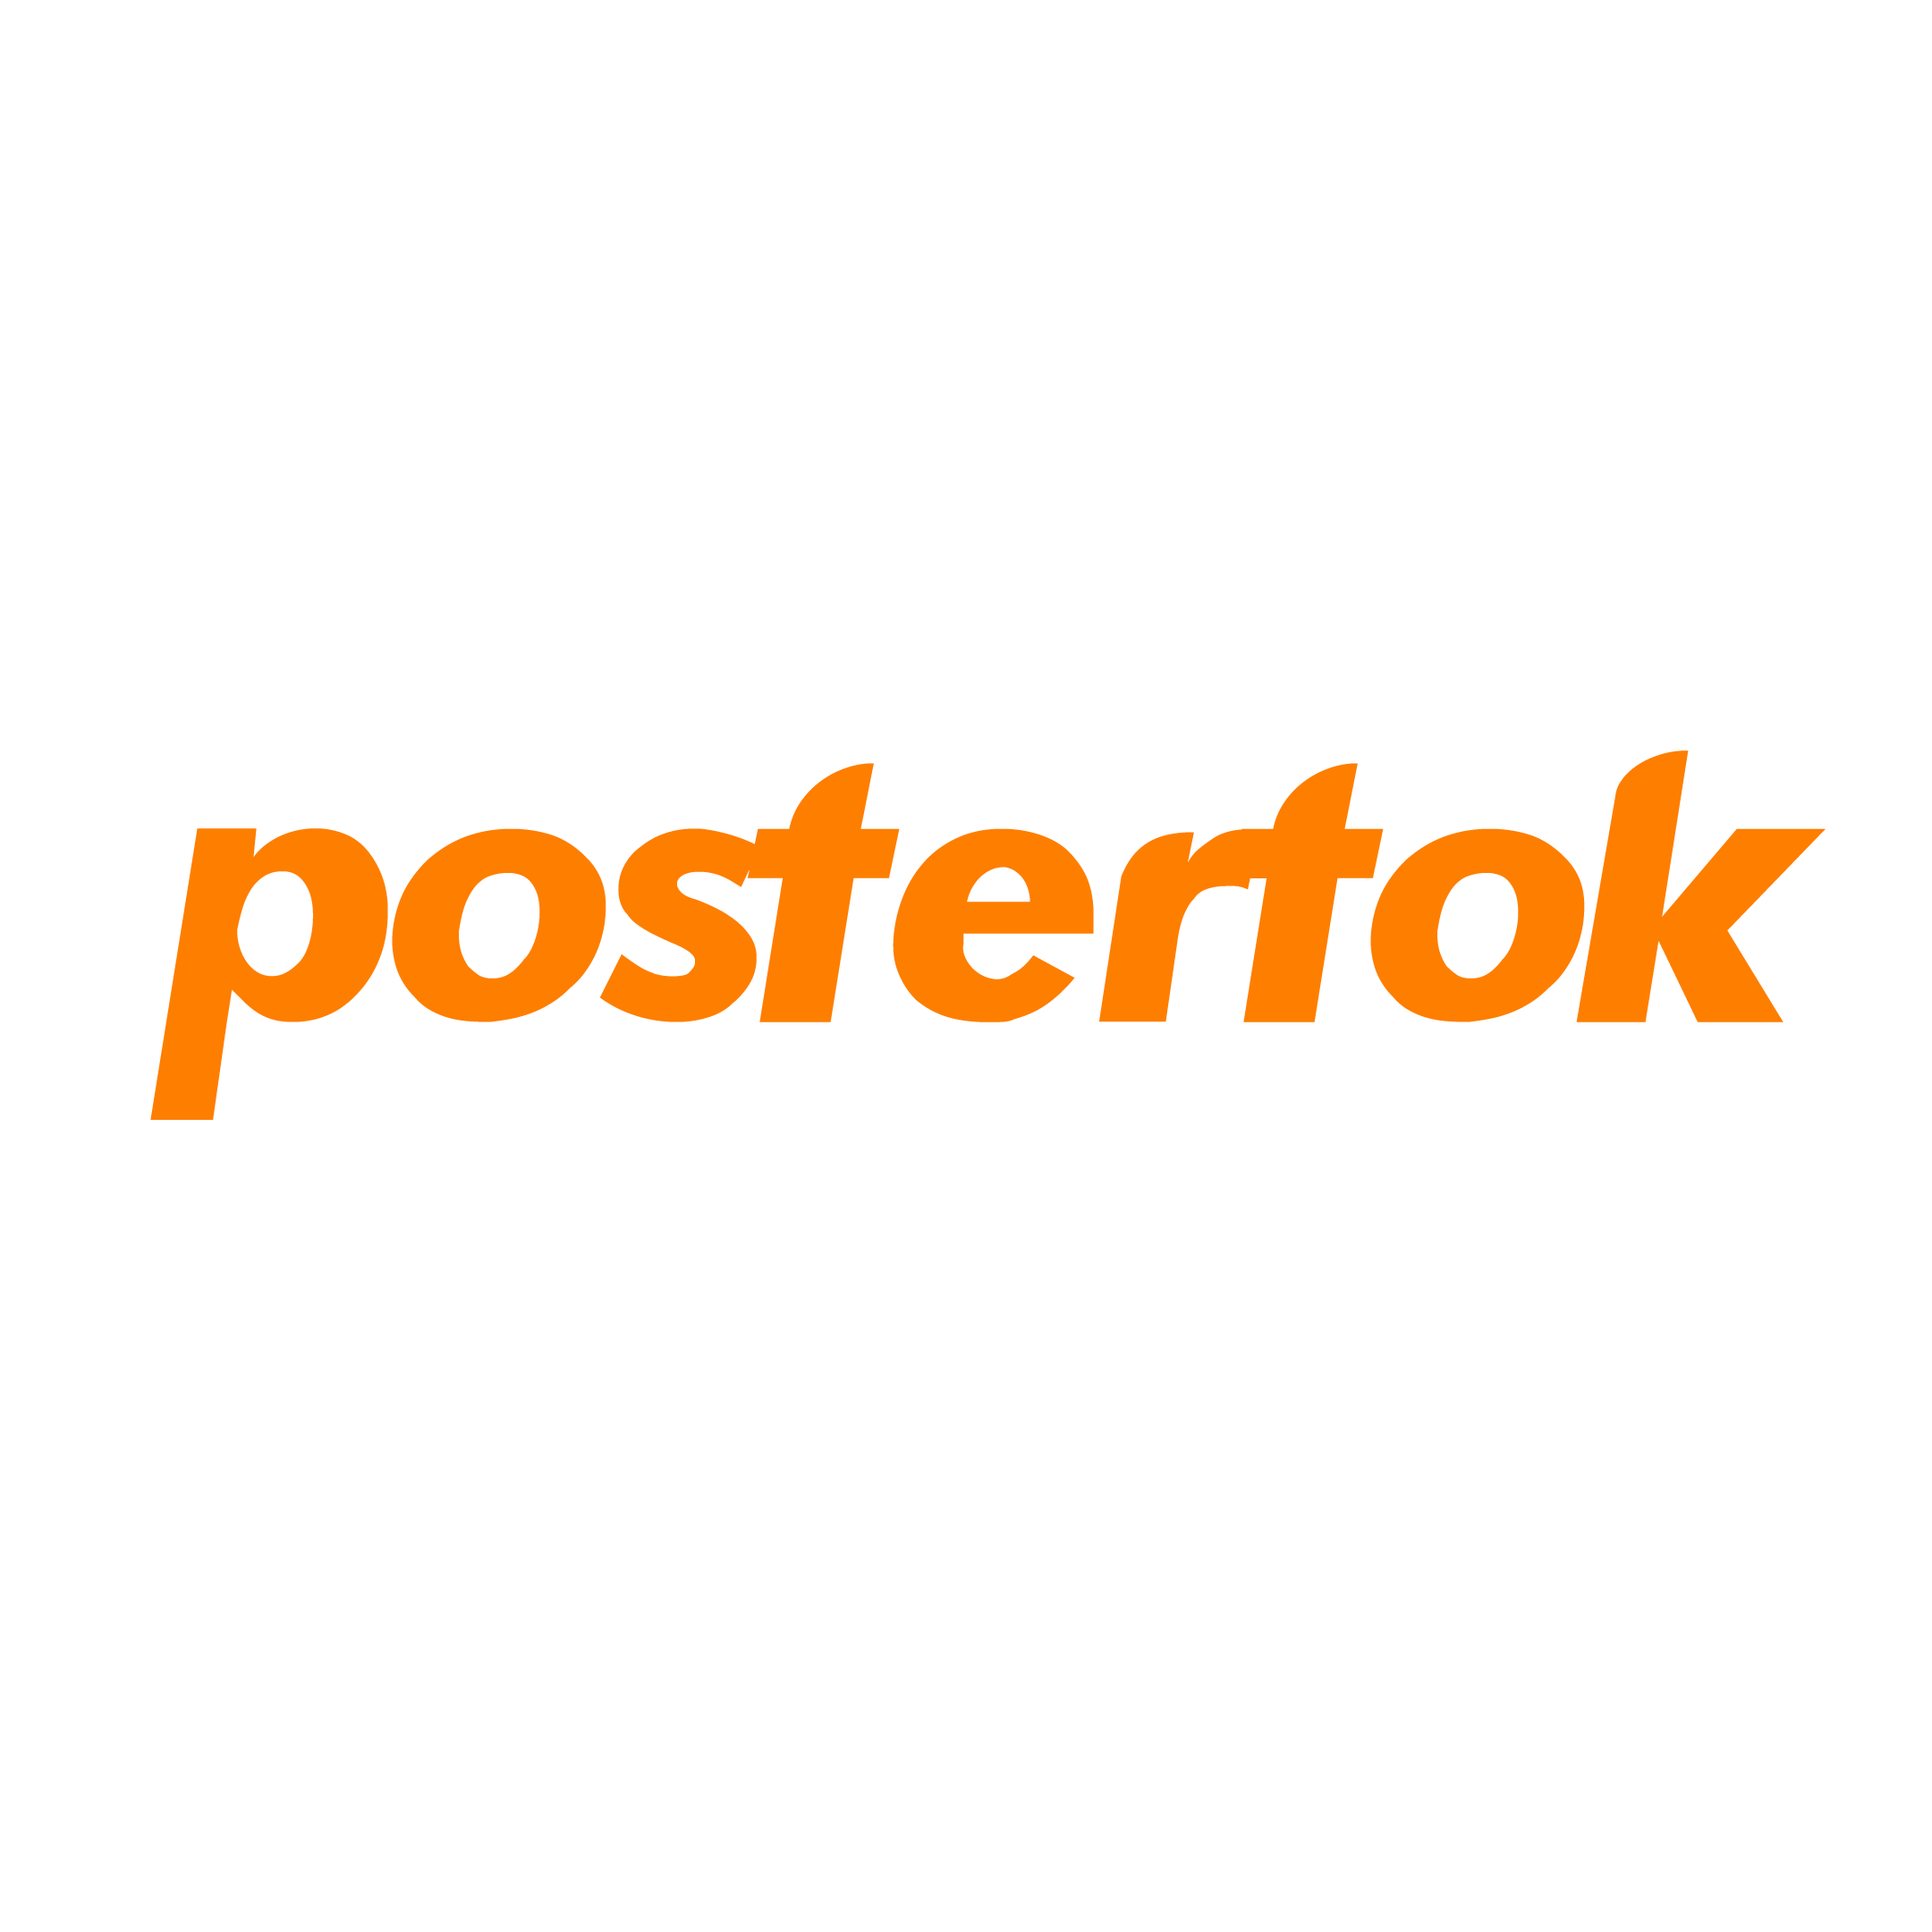 Postertok logo